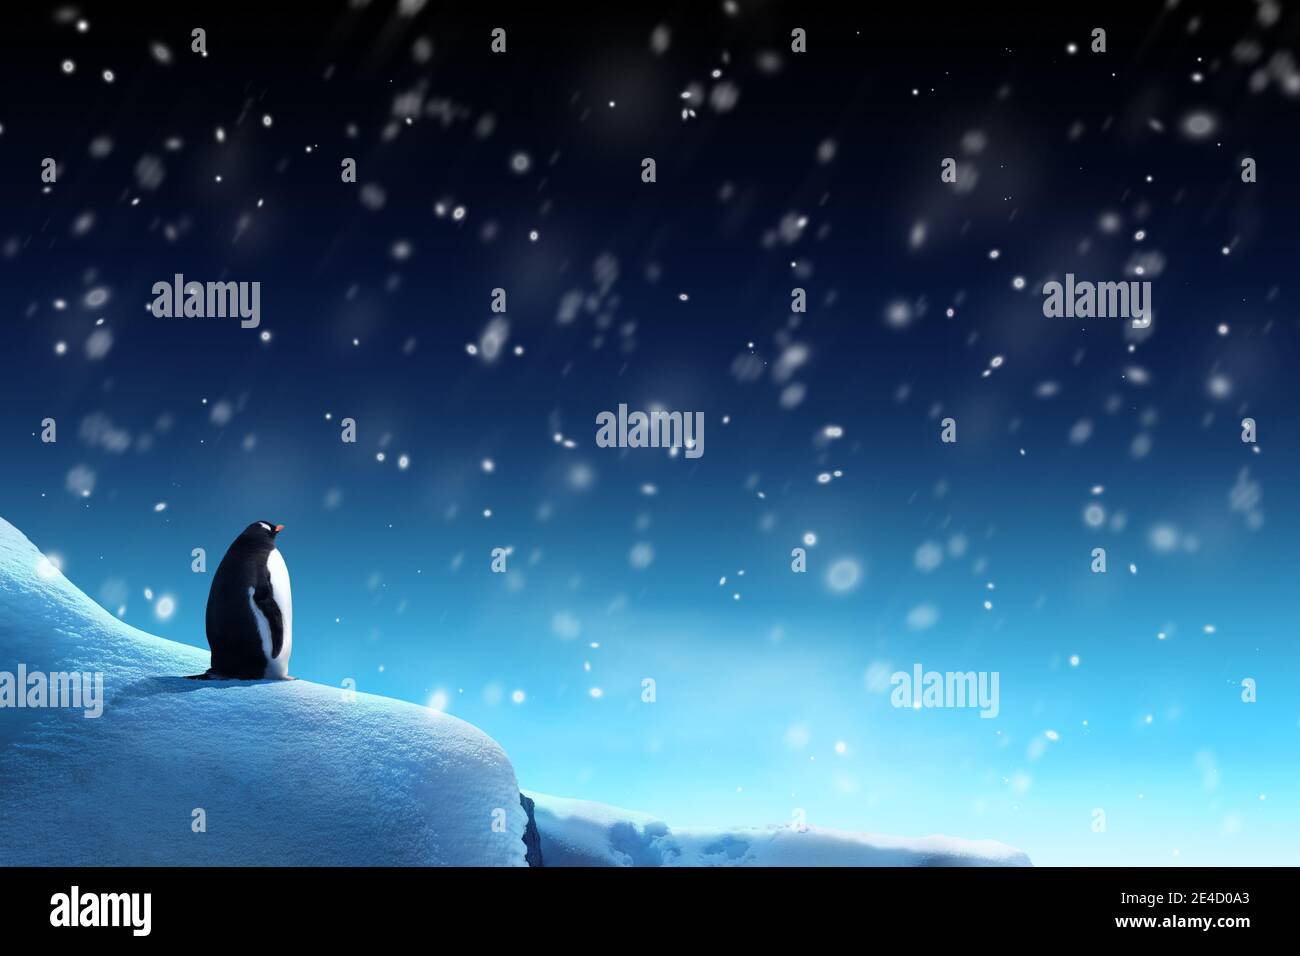 Winternachtszene mit einem Pinguin, der den Schnee fallen sieht. Weihnachtsfeiertage Thema. Stockfoto